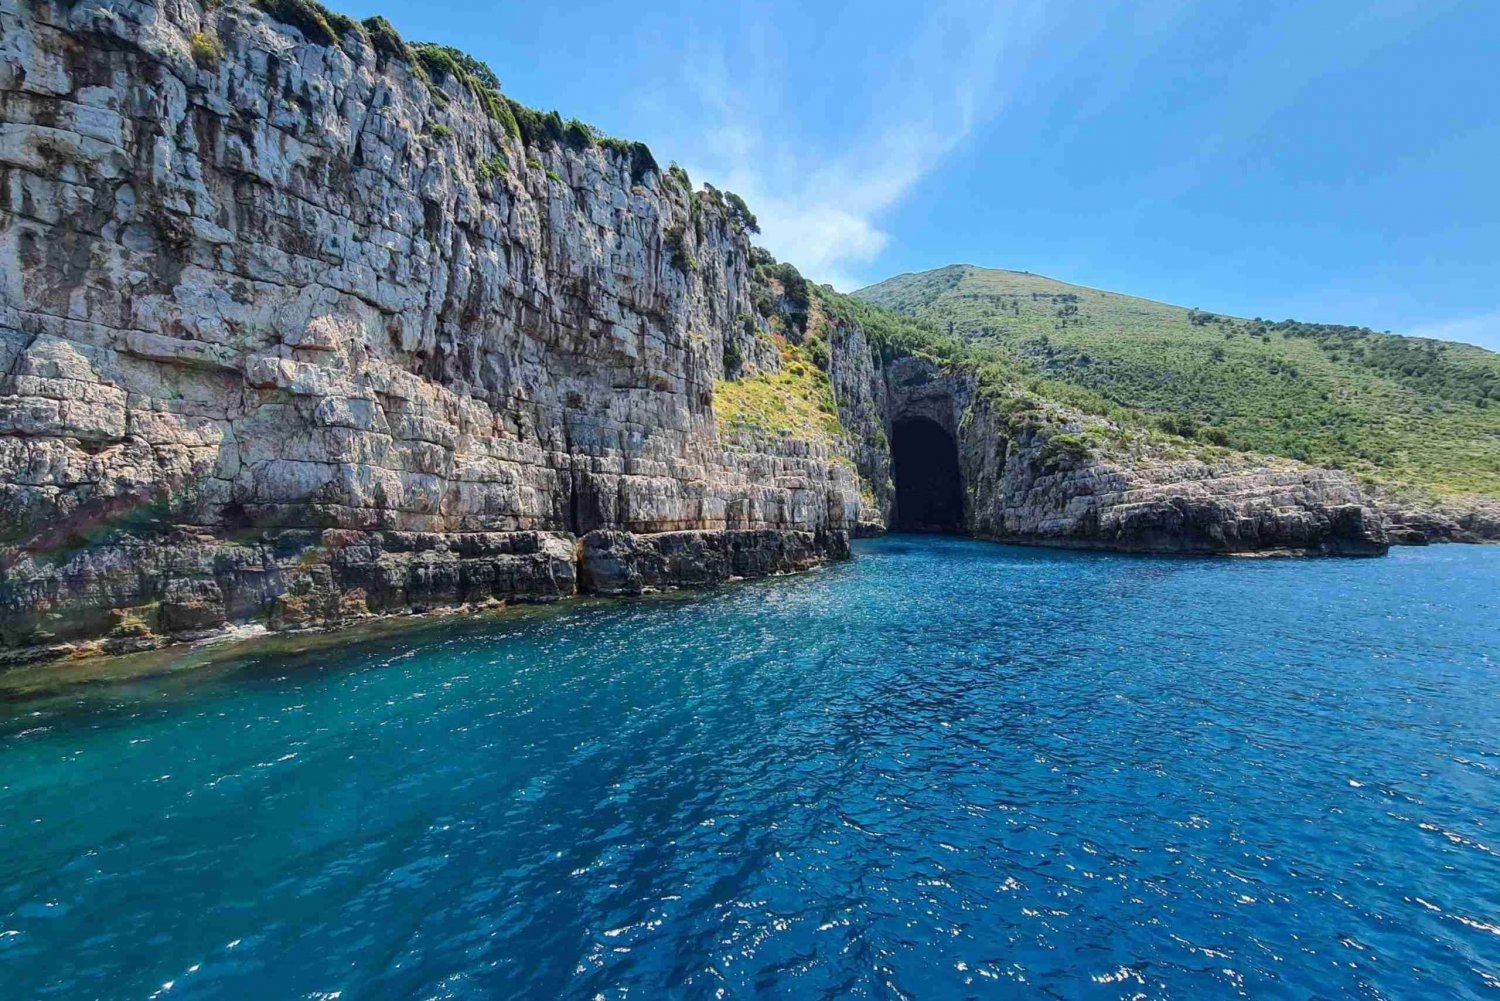 La baie de Dafina et la grotte magique sont des lieux secrets de la visite.